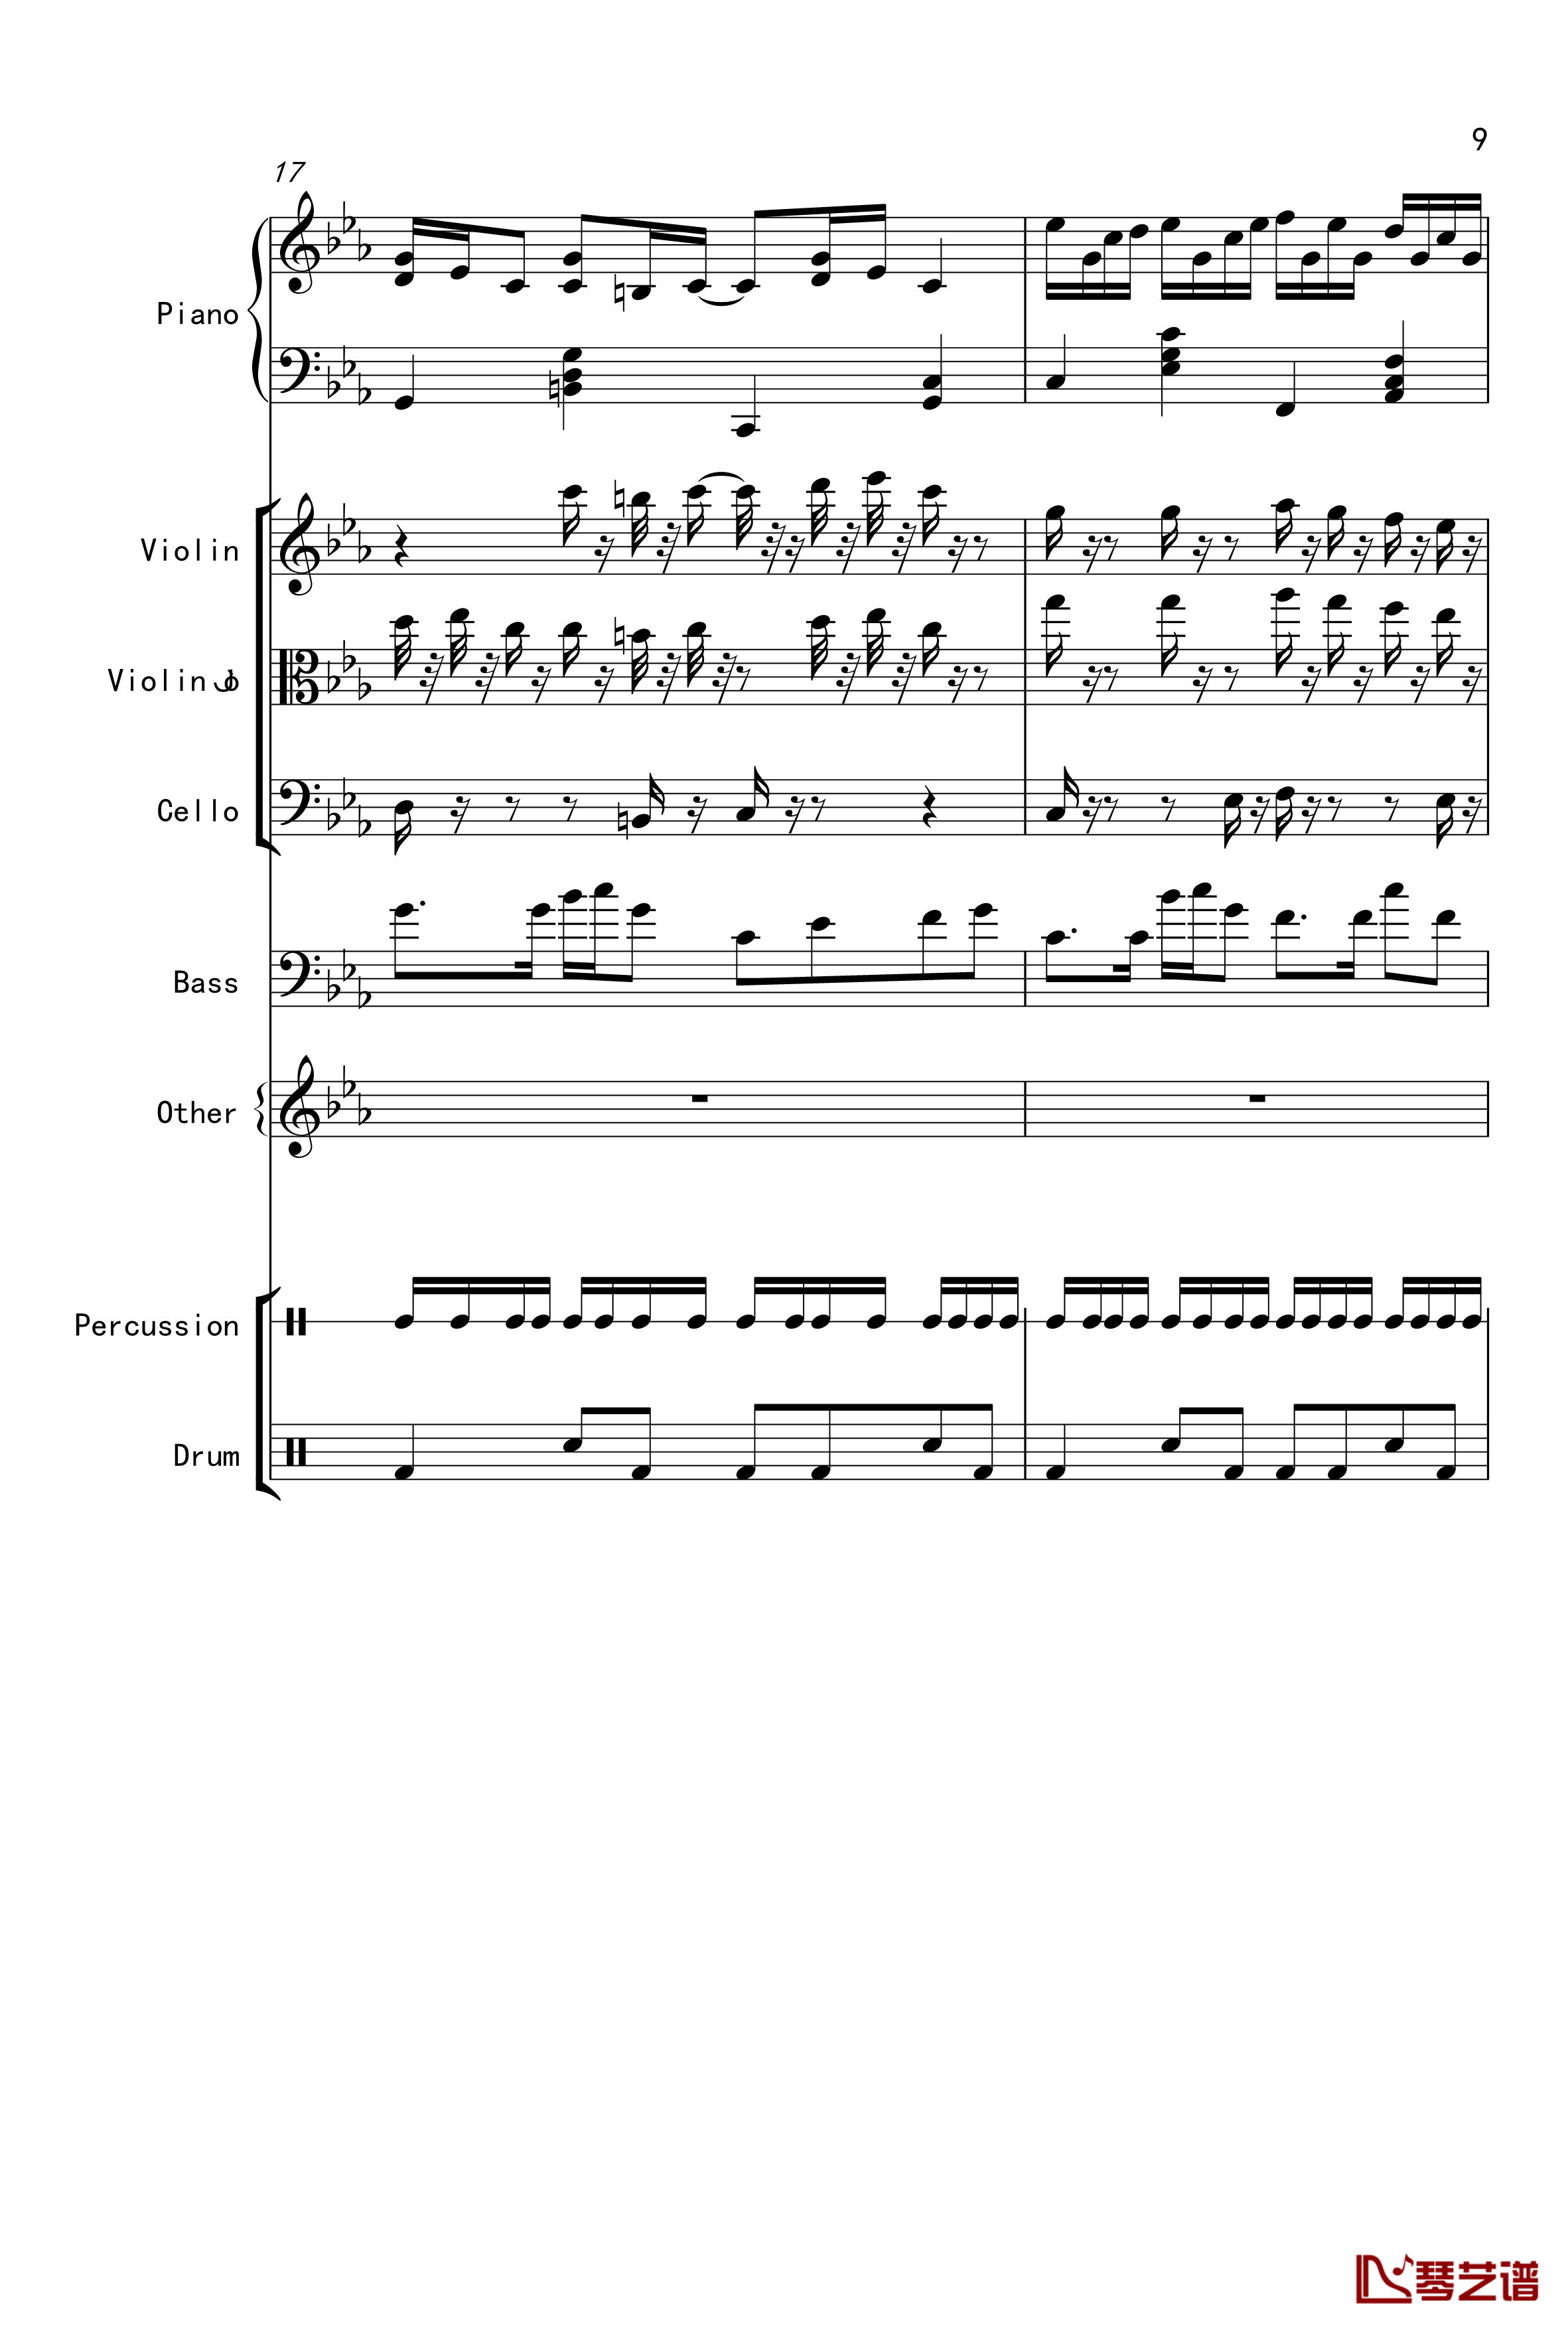 克罗地亚舞曲钢琴谱-Croatian Rhapsody-马克西姆-Maksim·Mrvica9